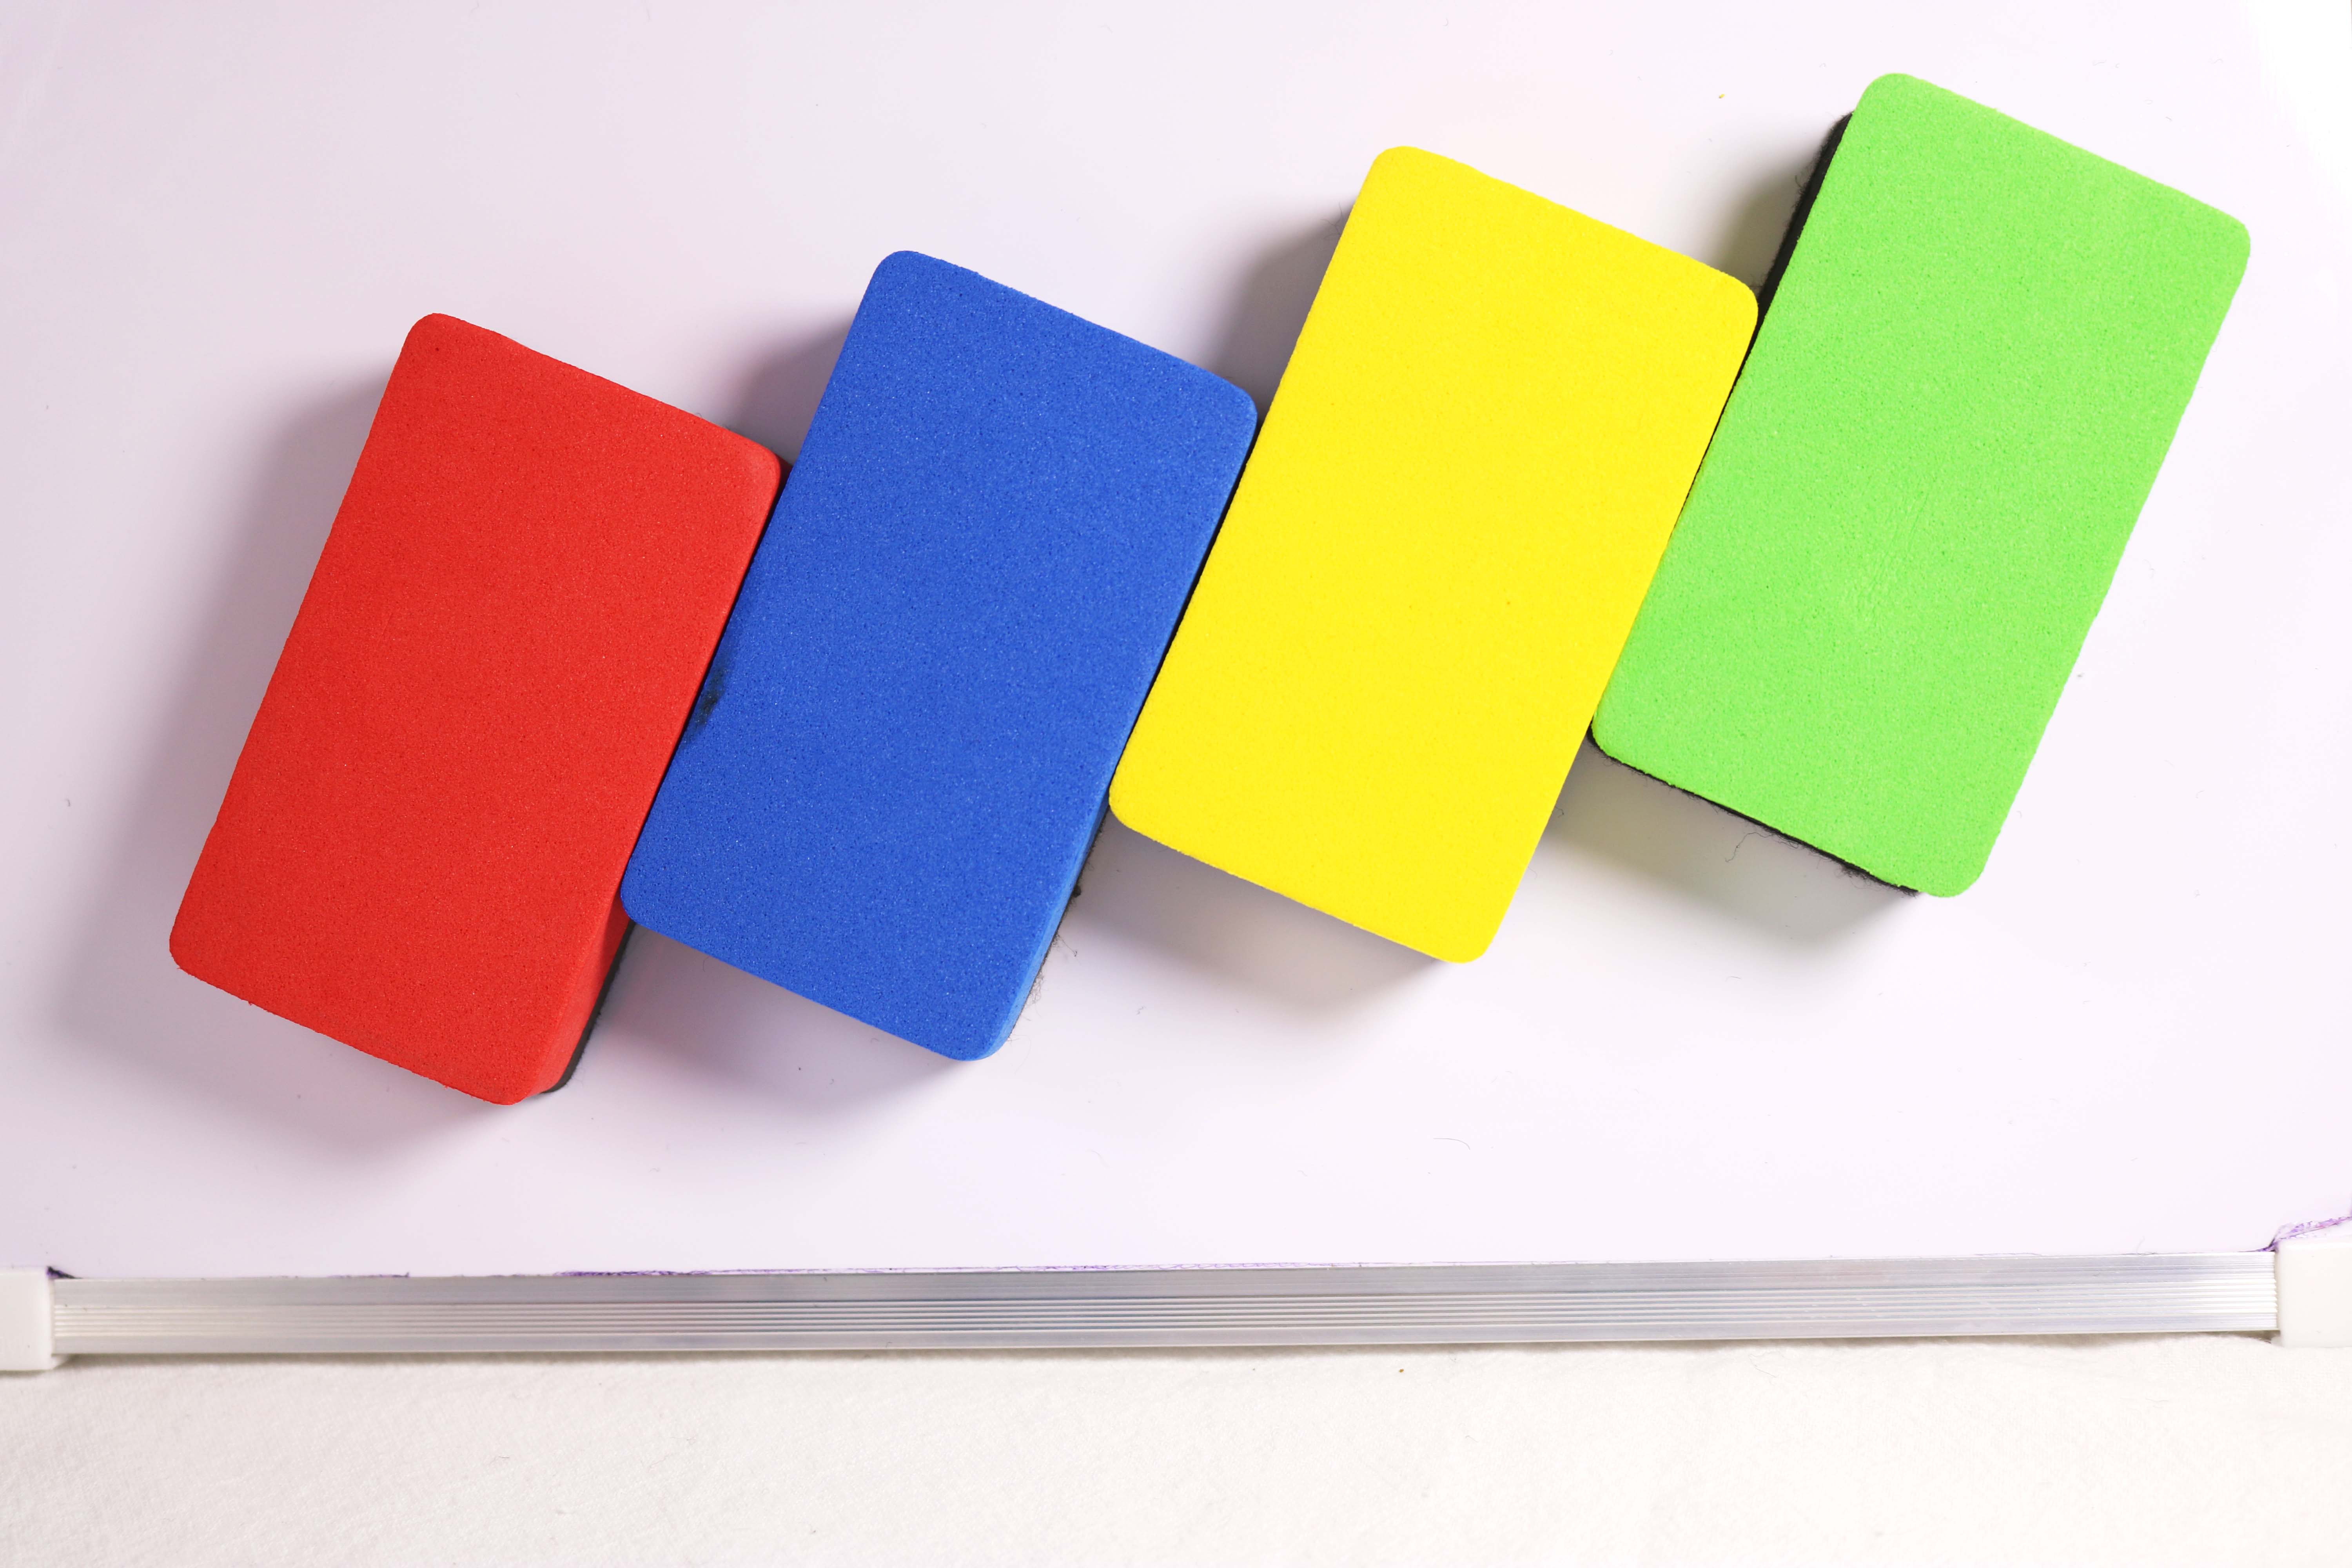 2 stk / sæt magnetisk tavle og whiteboard viskelæder til at tørre markeringspenns spor som tilfældig farve